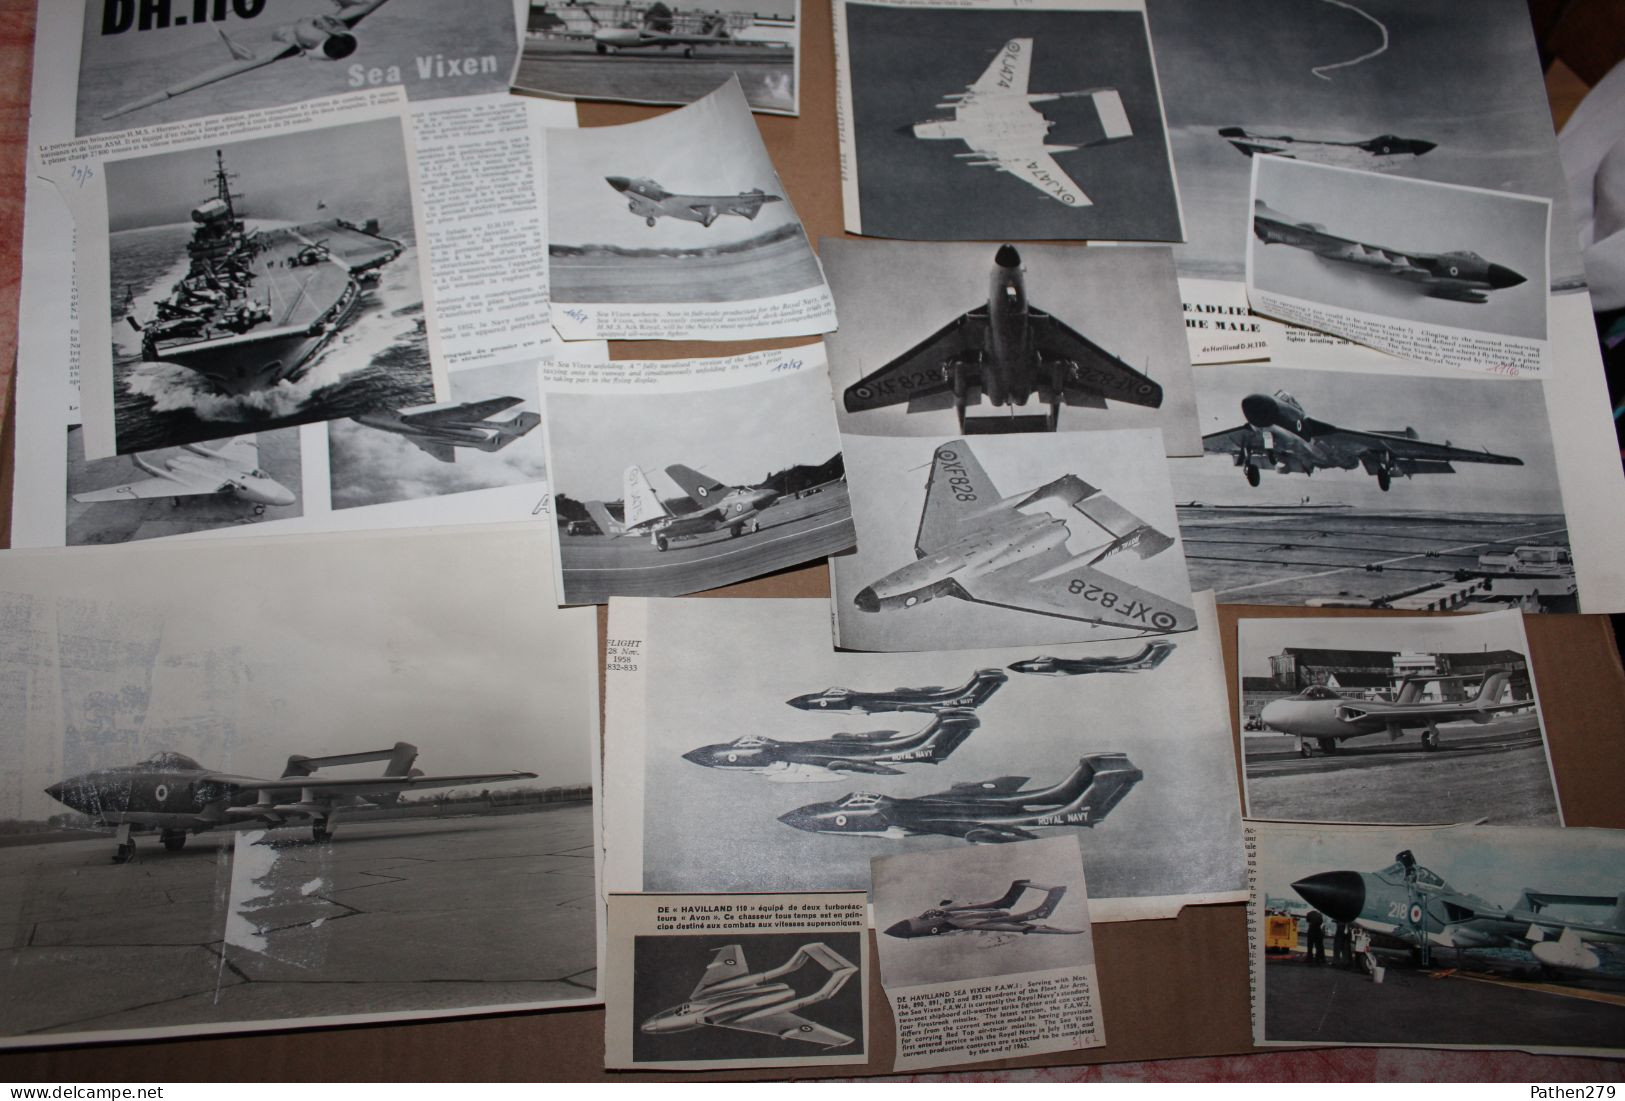 Lot de 330g d'anciennes coupures de presse et photos de l'aéronef britannique De Havilland DH-110 "Sea Vixen"